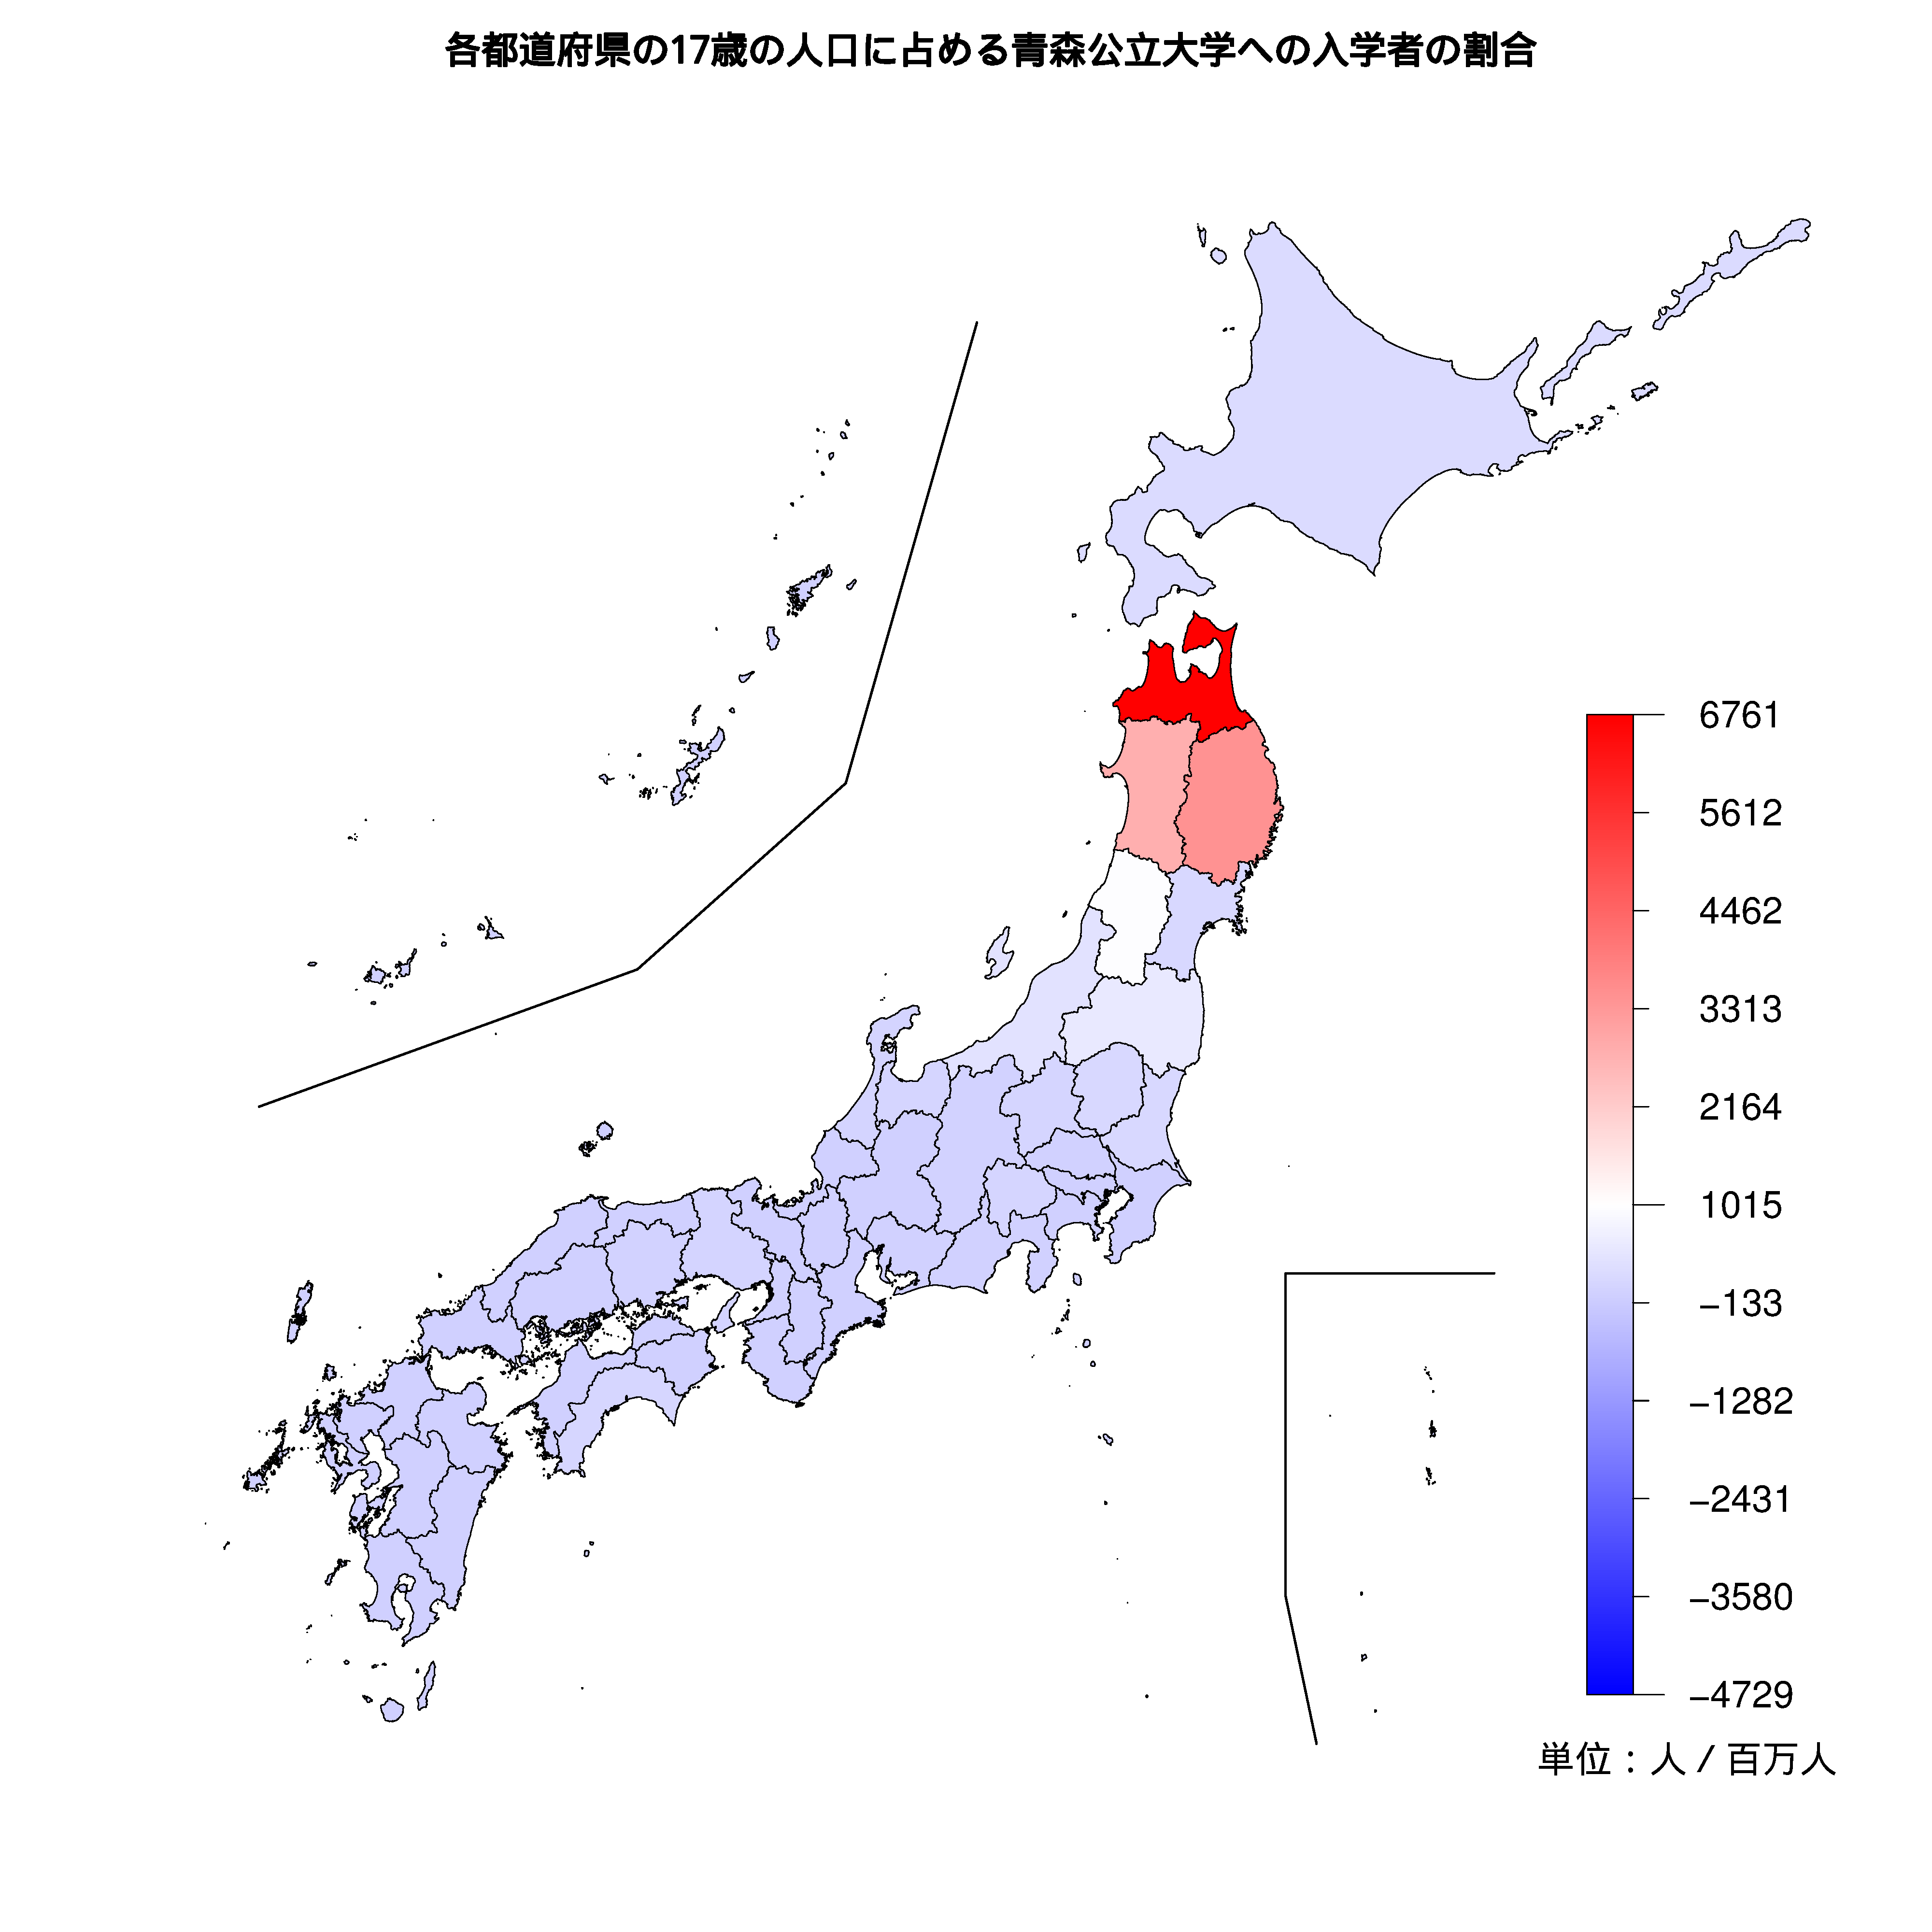 青森公立大学への入学者が多い都道府県の色分け地図